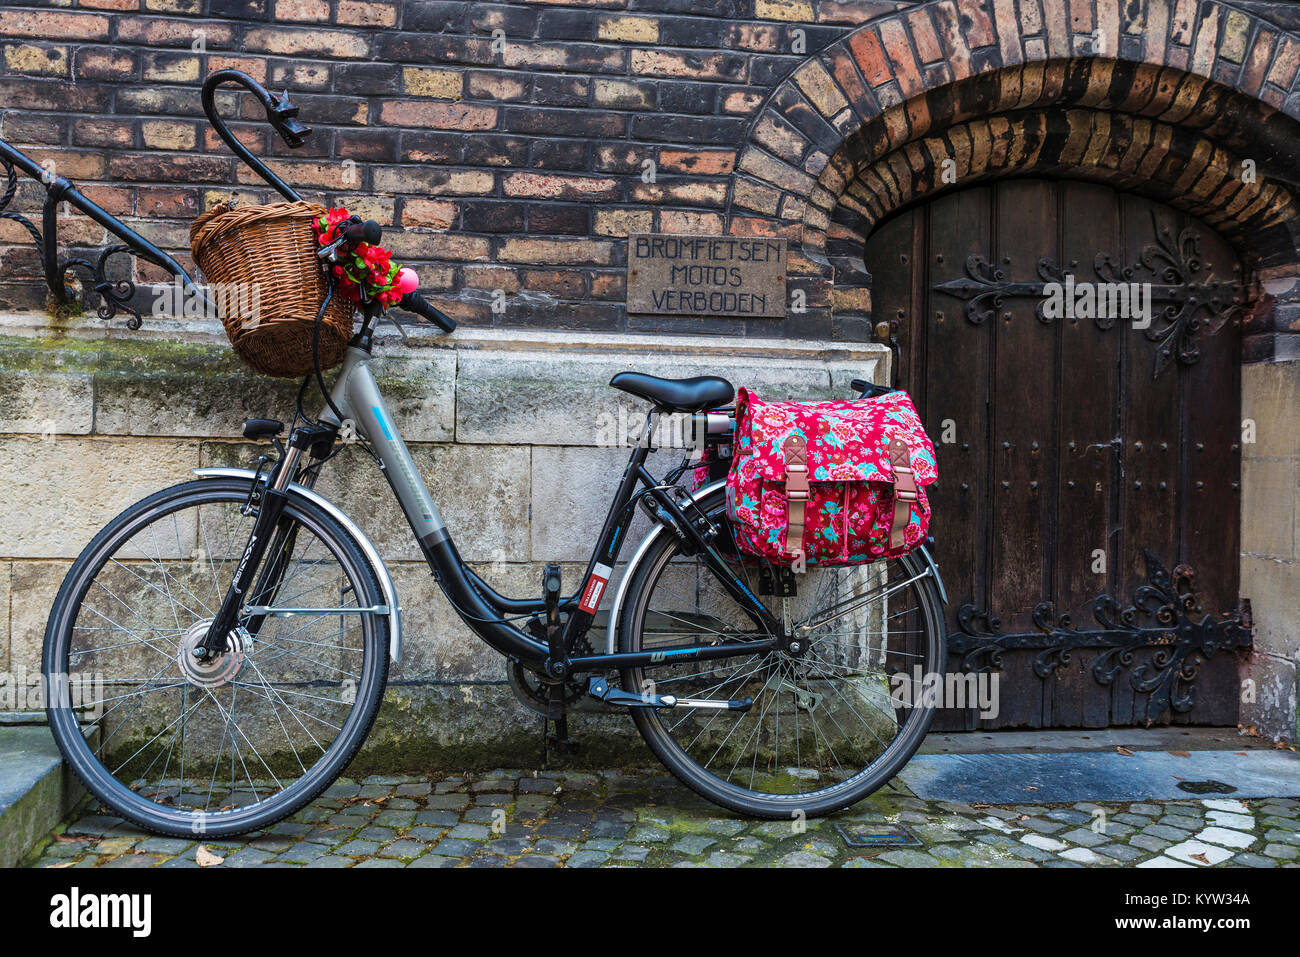 Bruges, Belgio - 31 agosto 2017: Bicicletta elettrica parcheggiata su una strada della città medievale di Bruges, Belgio Foto Stock